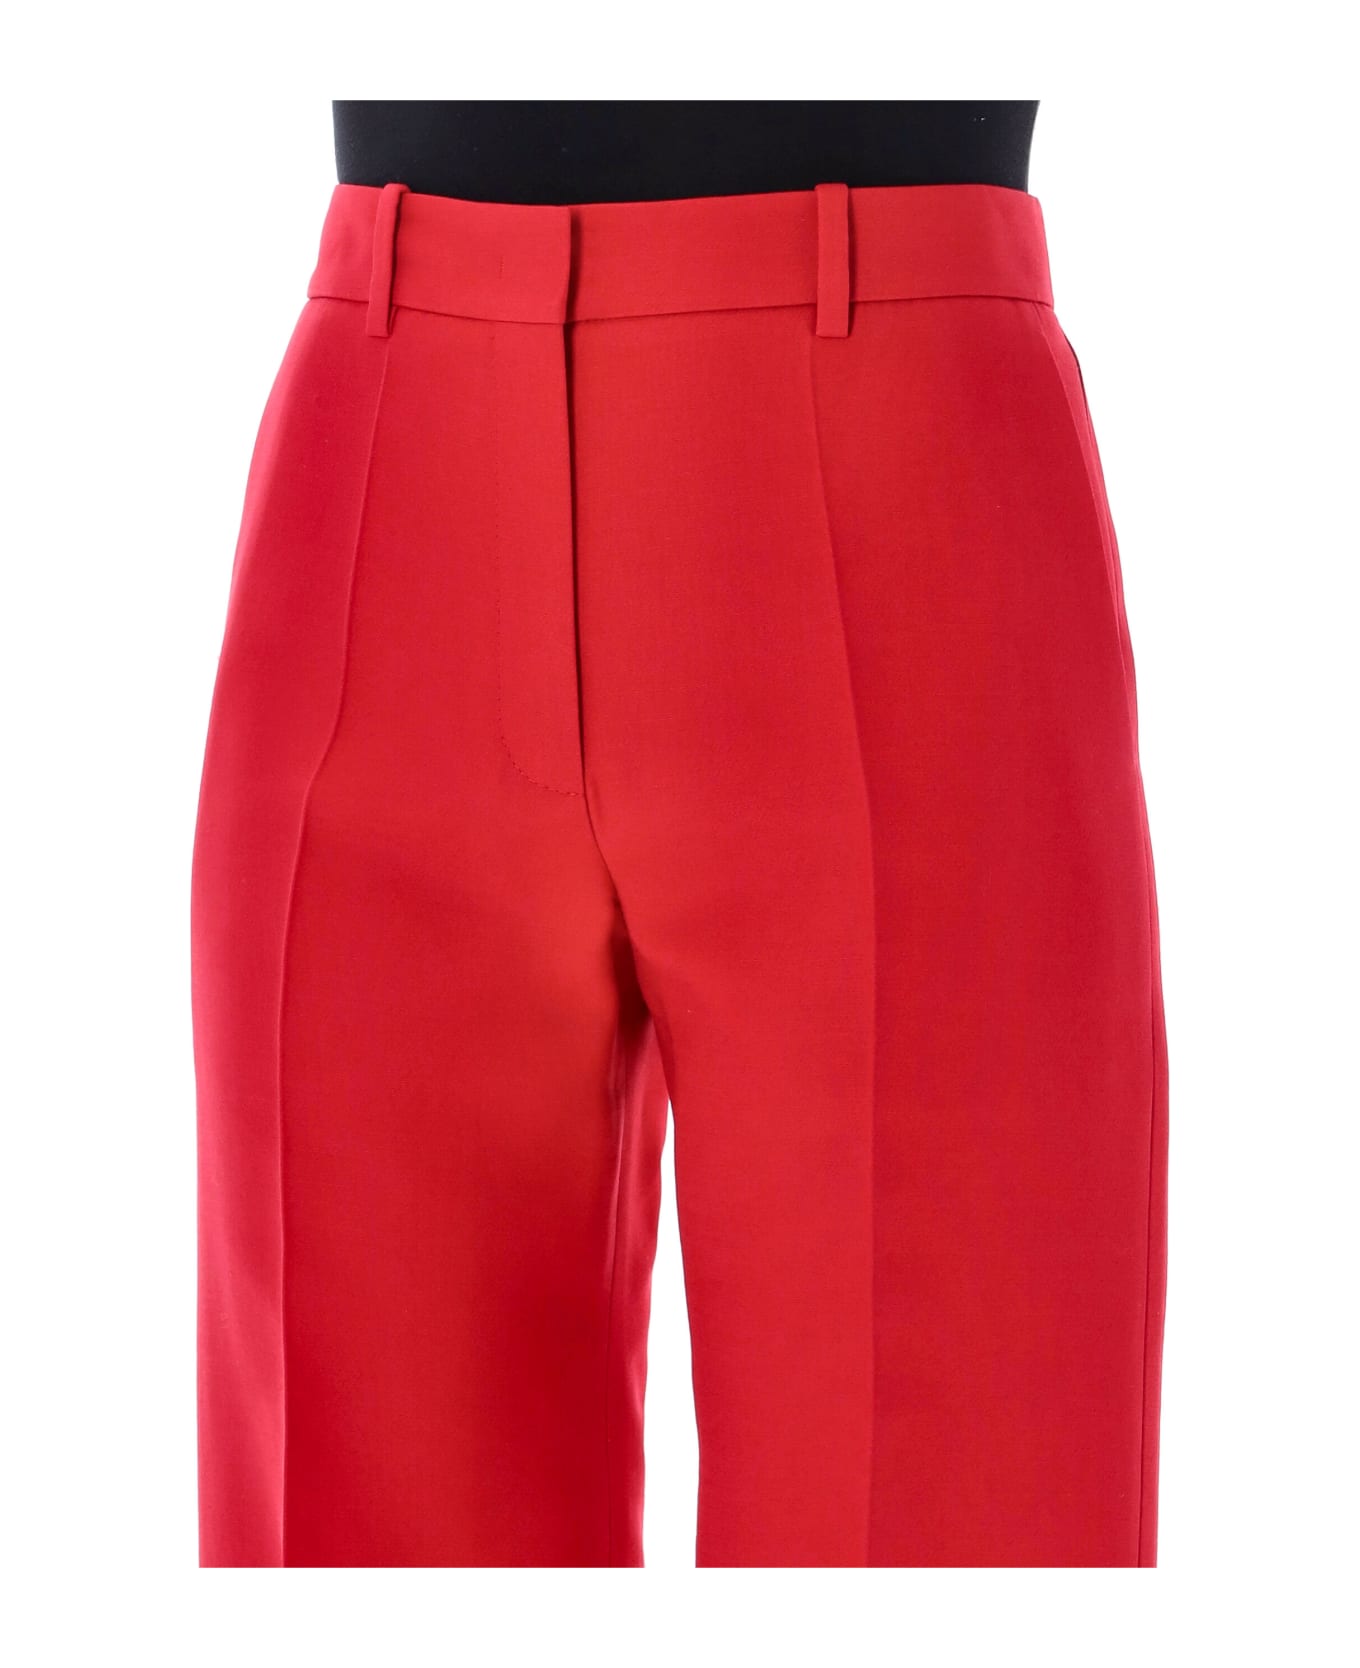 Valentino Garavani Crepe Couture Trousers - RED